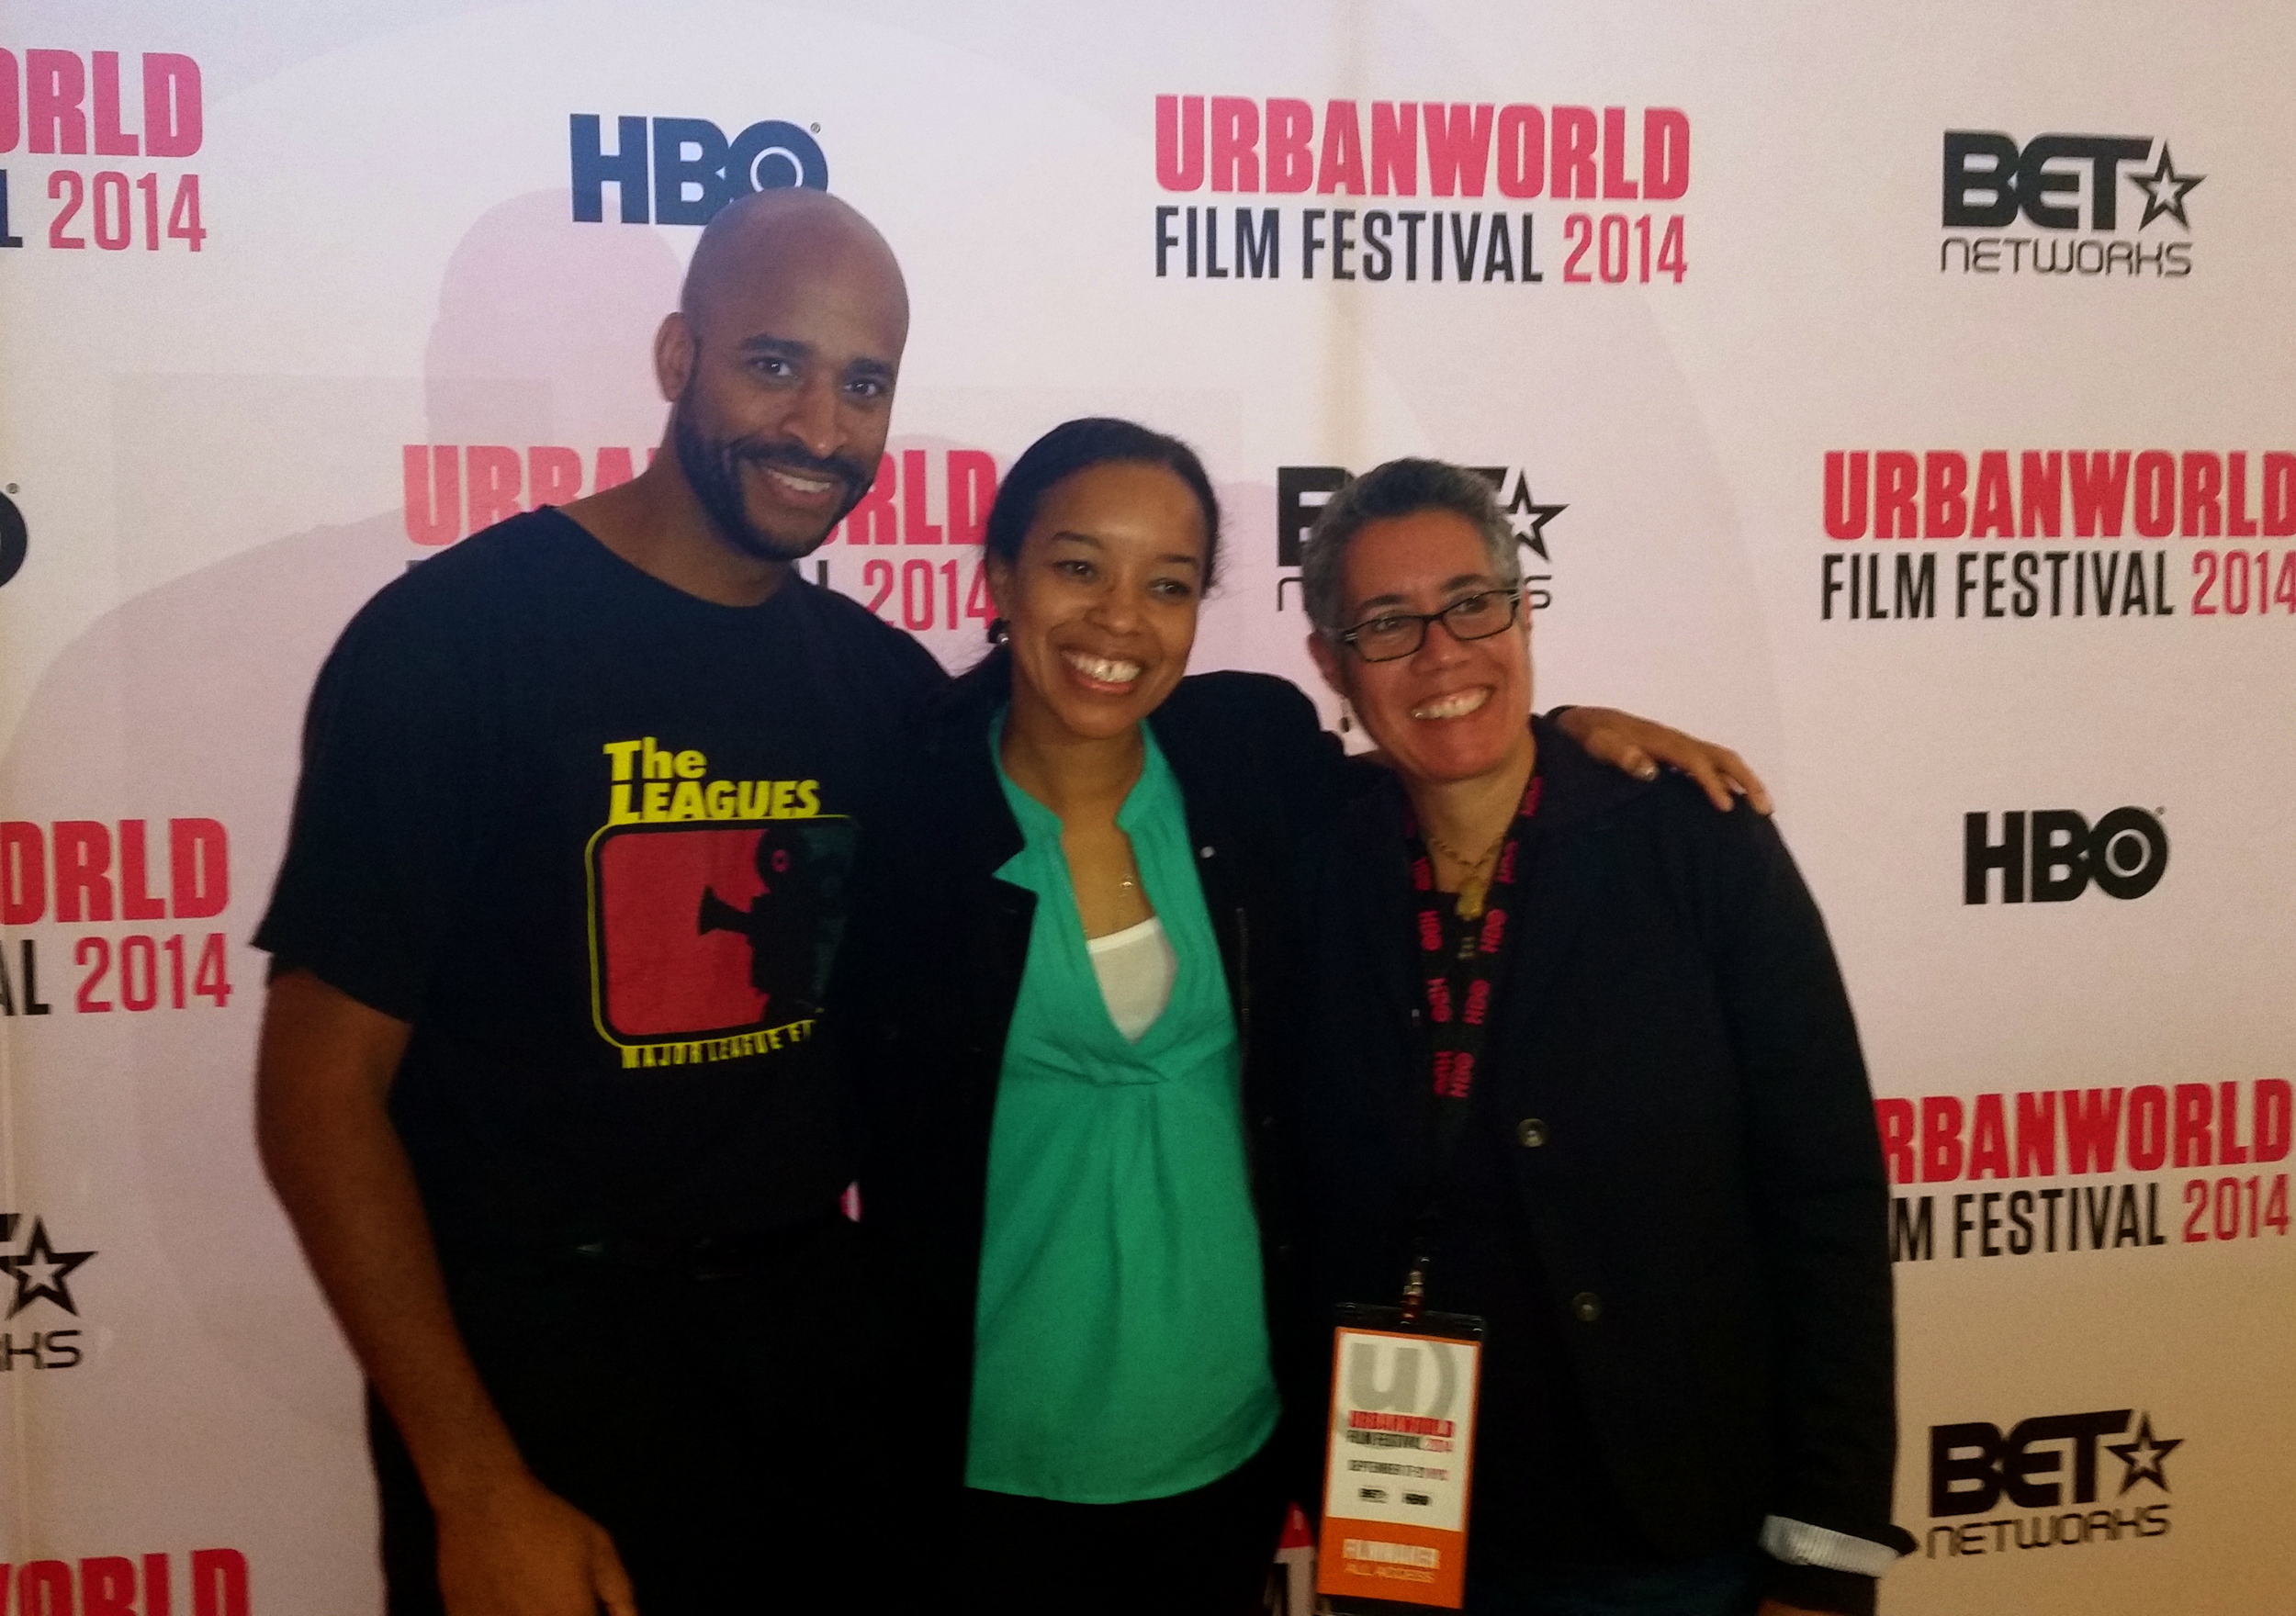  Urban World Film Festival with filmmaker, Booker T. Mattison and production designer, Toni Barton. 